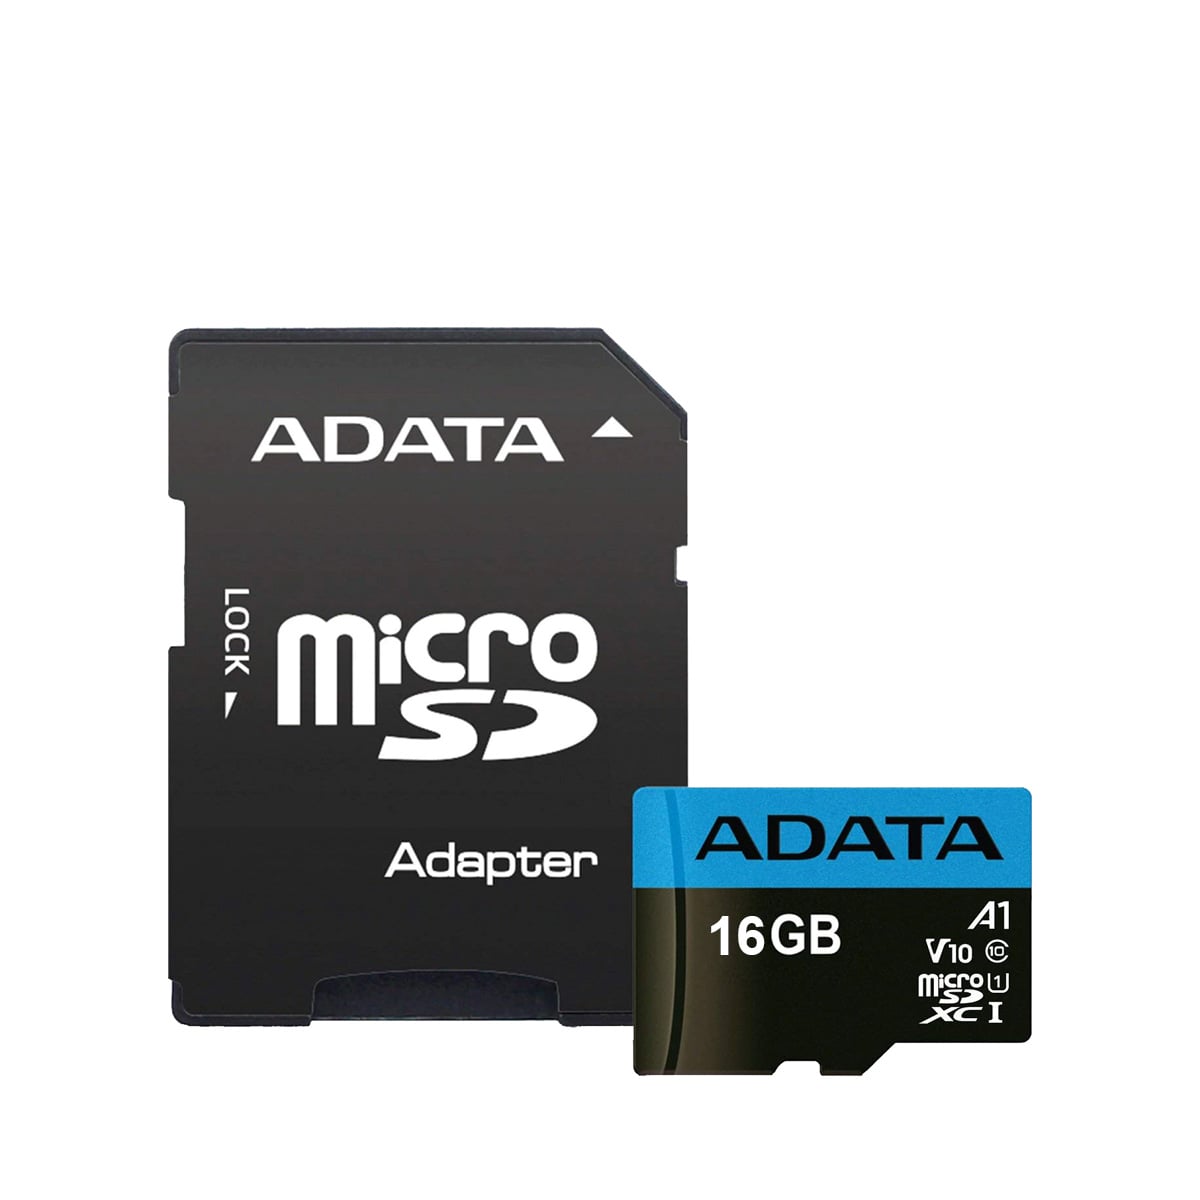 کارت حافظه microSDHC ای دیتا مدل Premier V10 A1 ظرفیت 16 گیگابایت